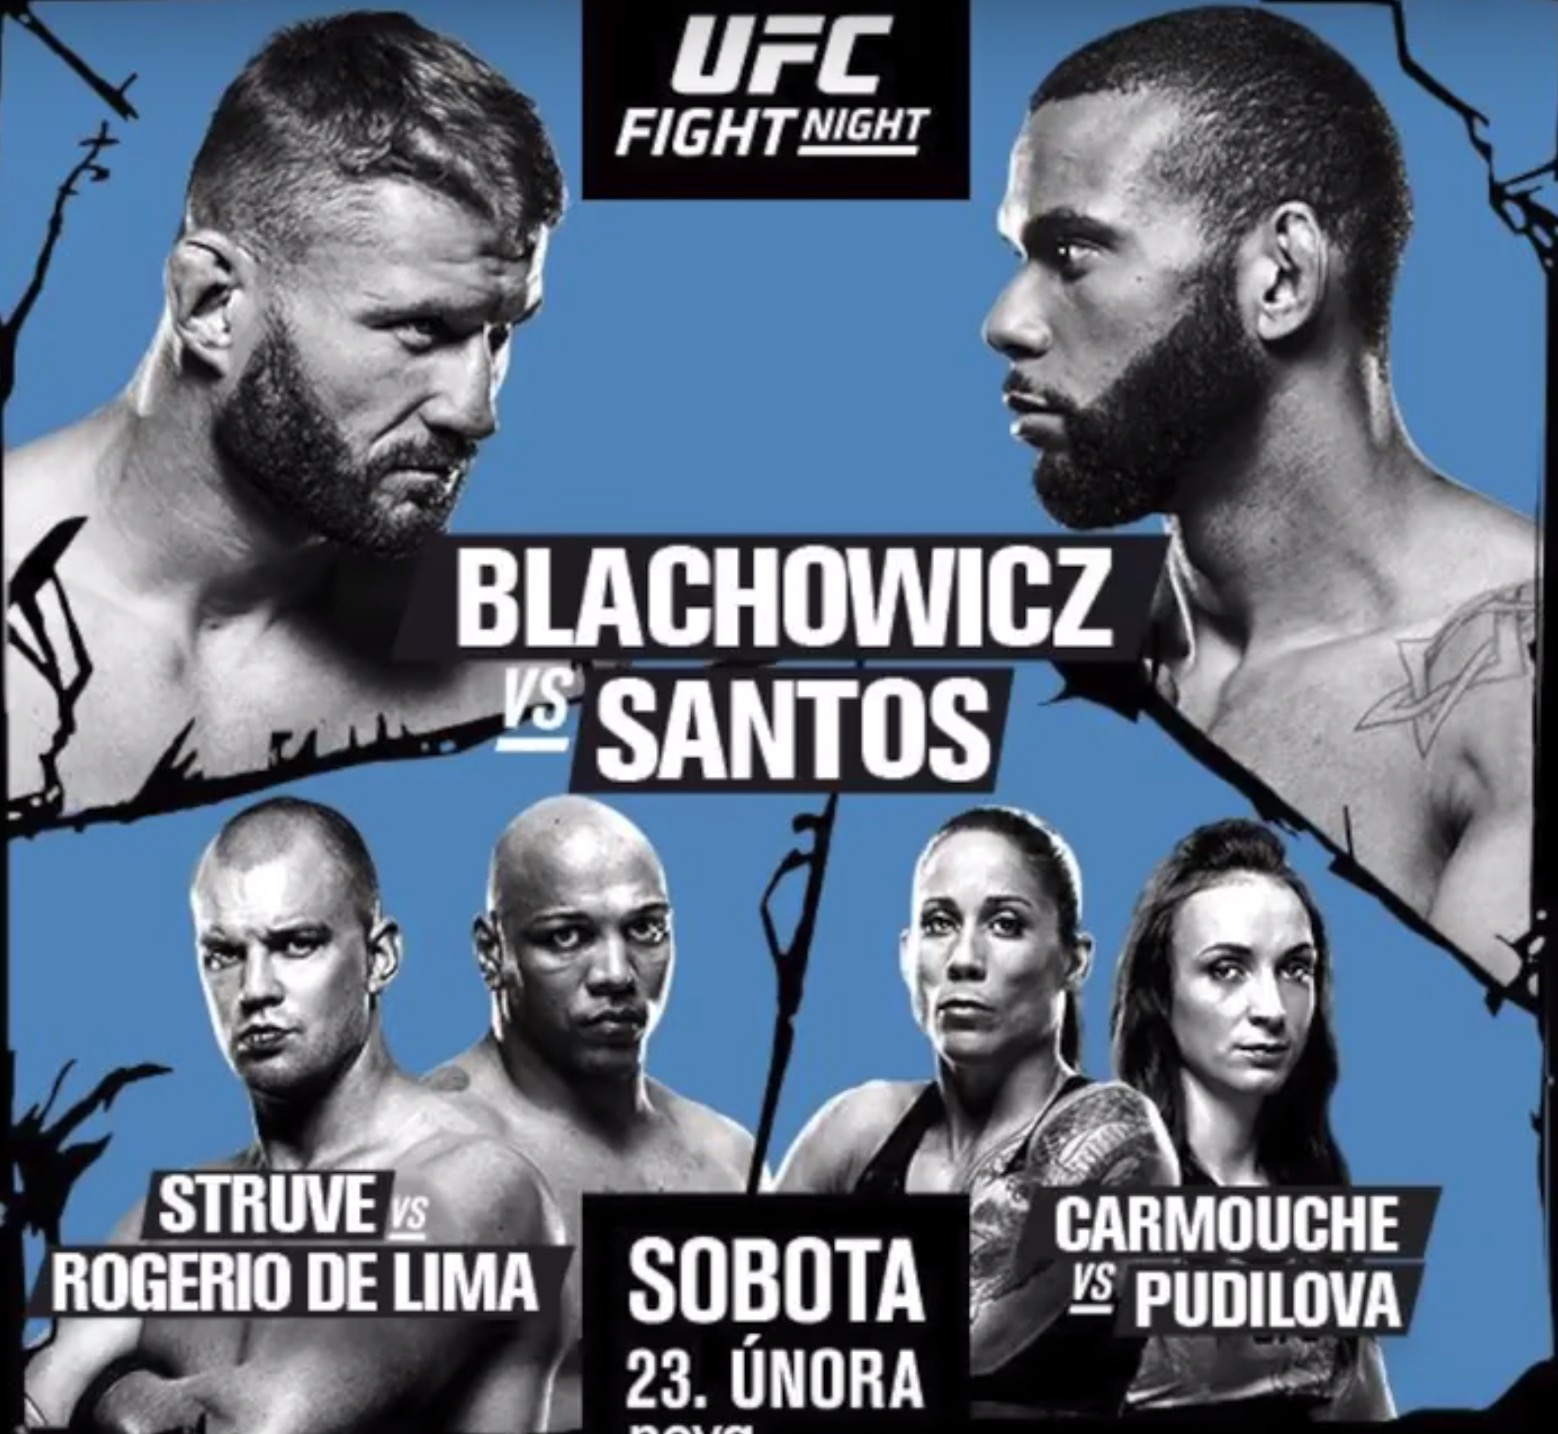 UFC Fight Night 145 Live Stream Watch Blachowicz vs